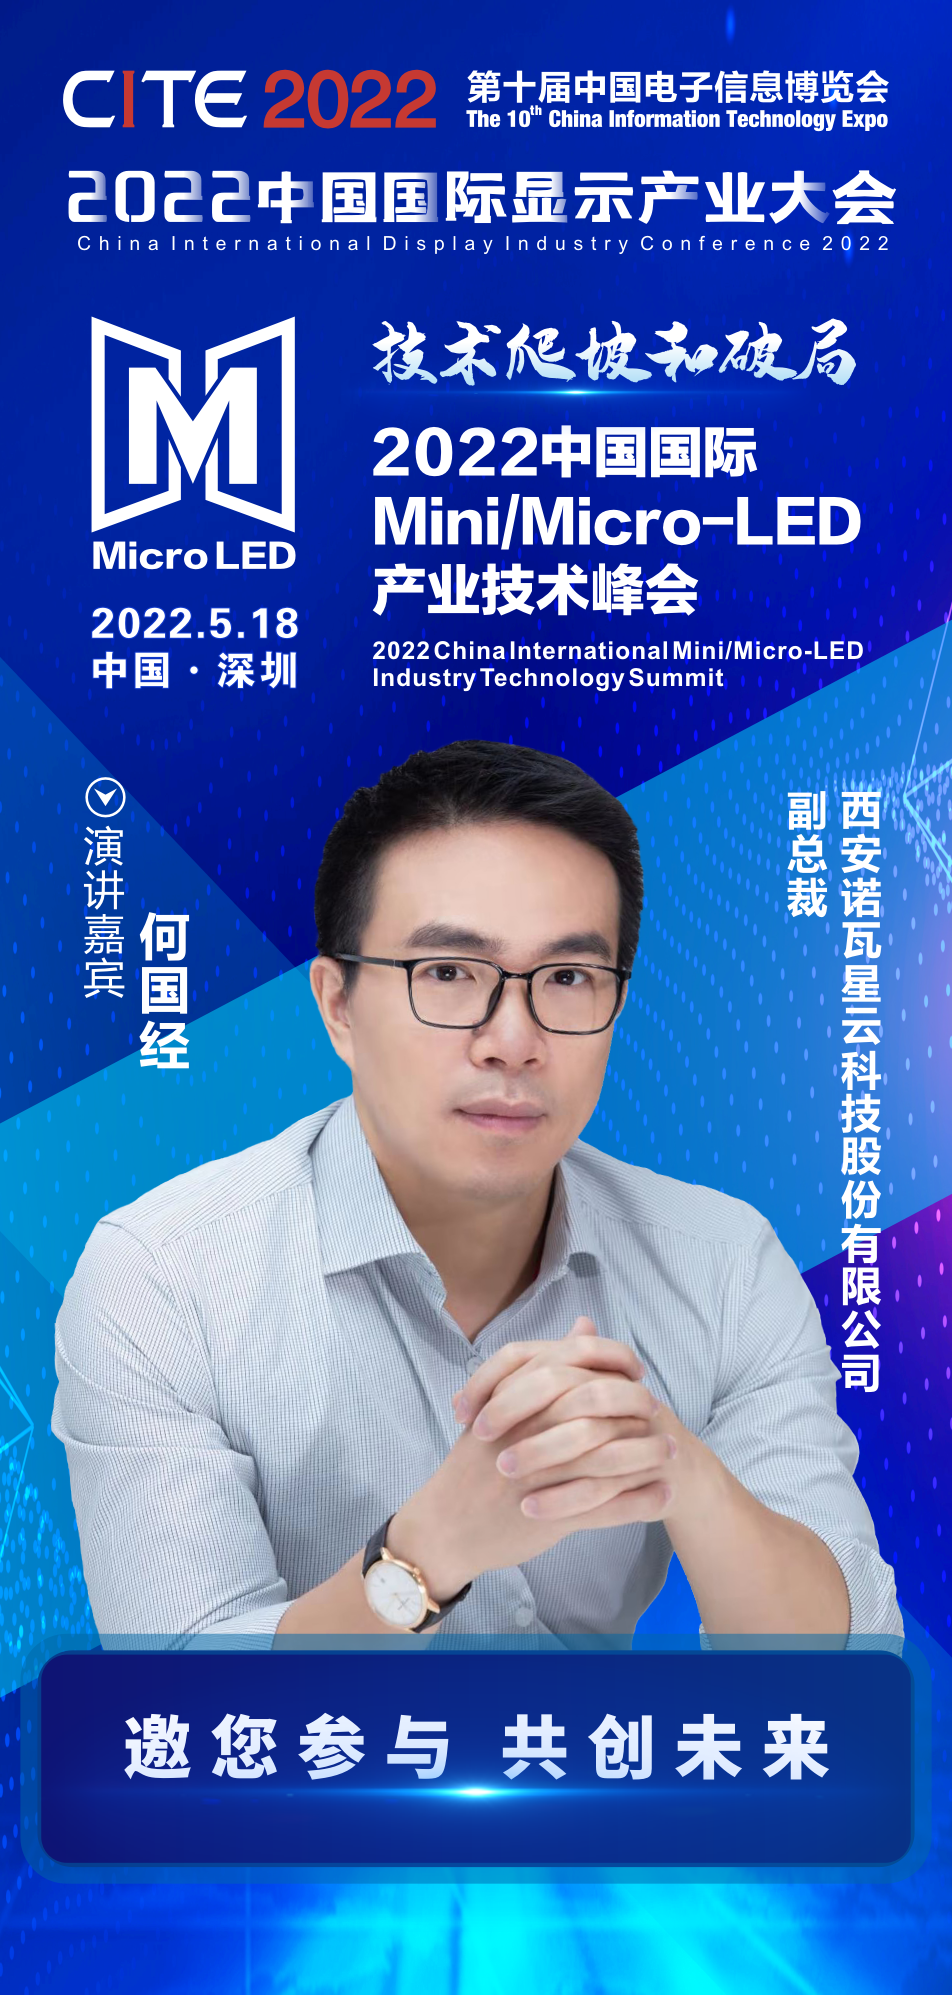 技术爬坡和破局 | 诺瓦星云科技副总裁何国经确认出席2022中国国际Mini/Micro-LED产业技术峰会